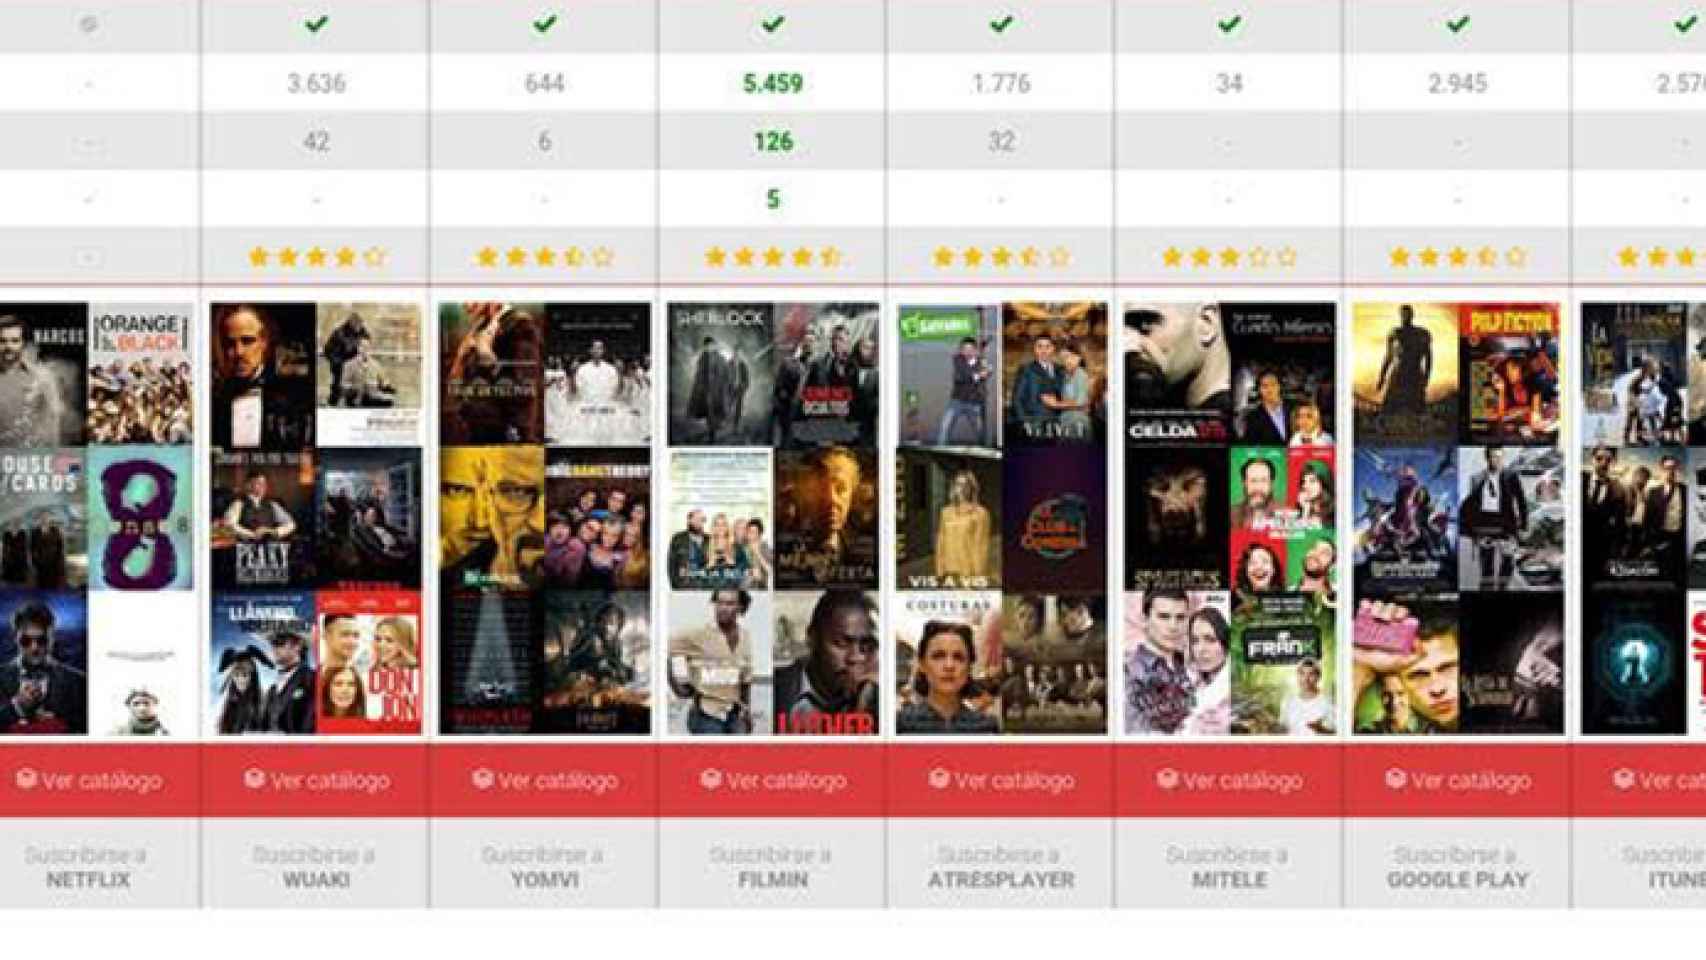 Tviso compara la oferta de Netflix con el resto de videoclubs online